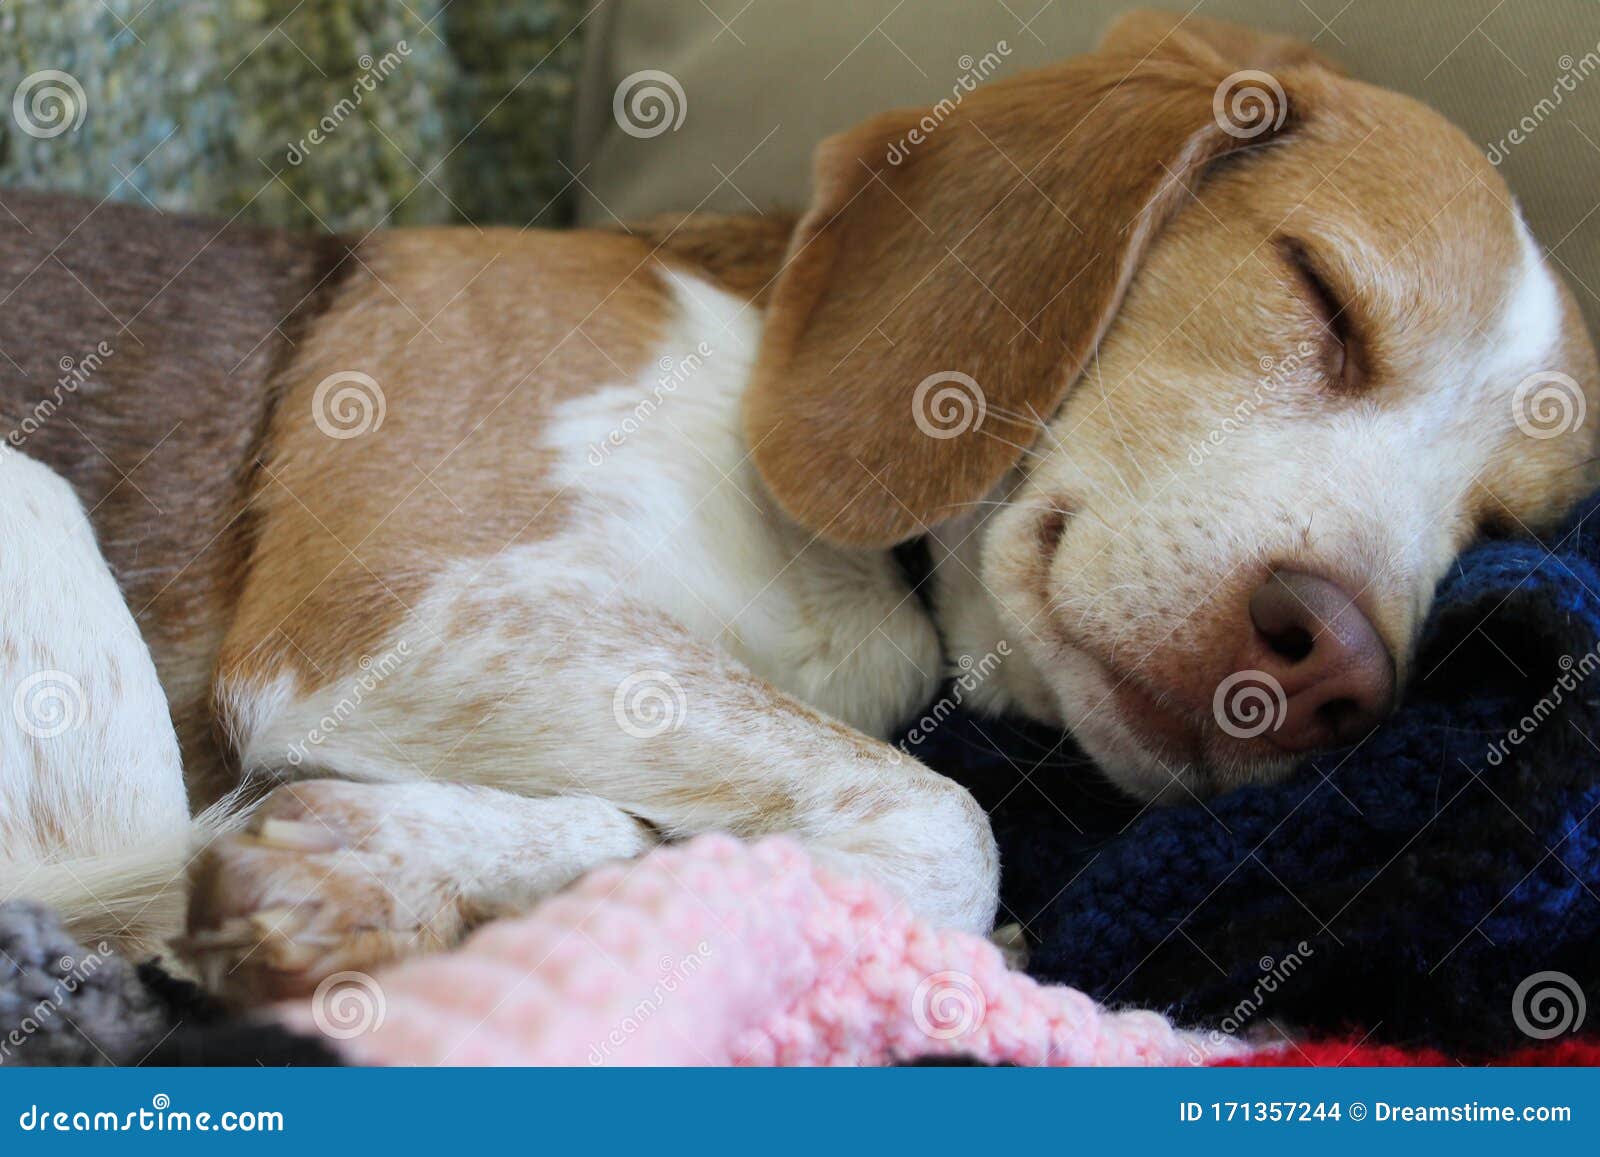 beagle taking a nap